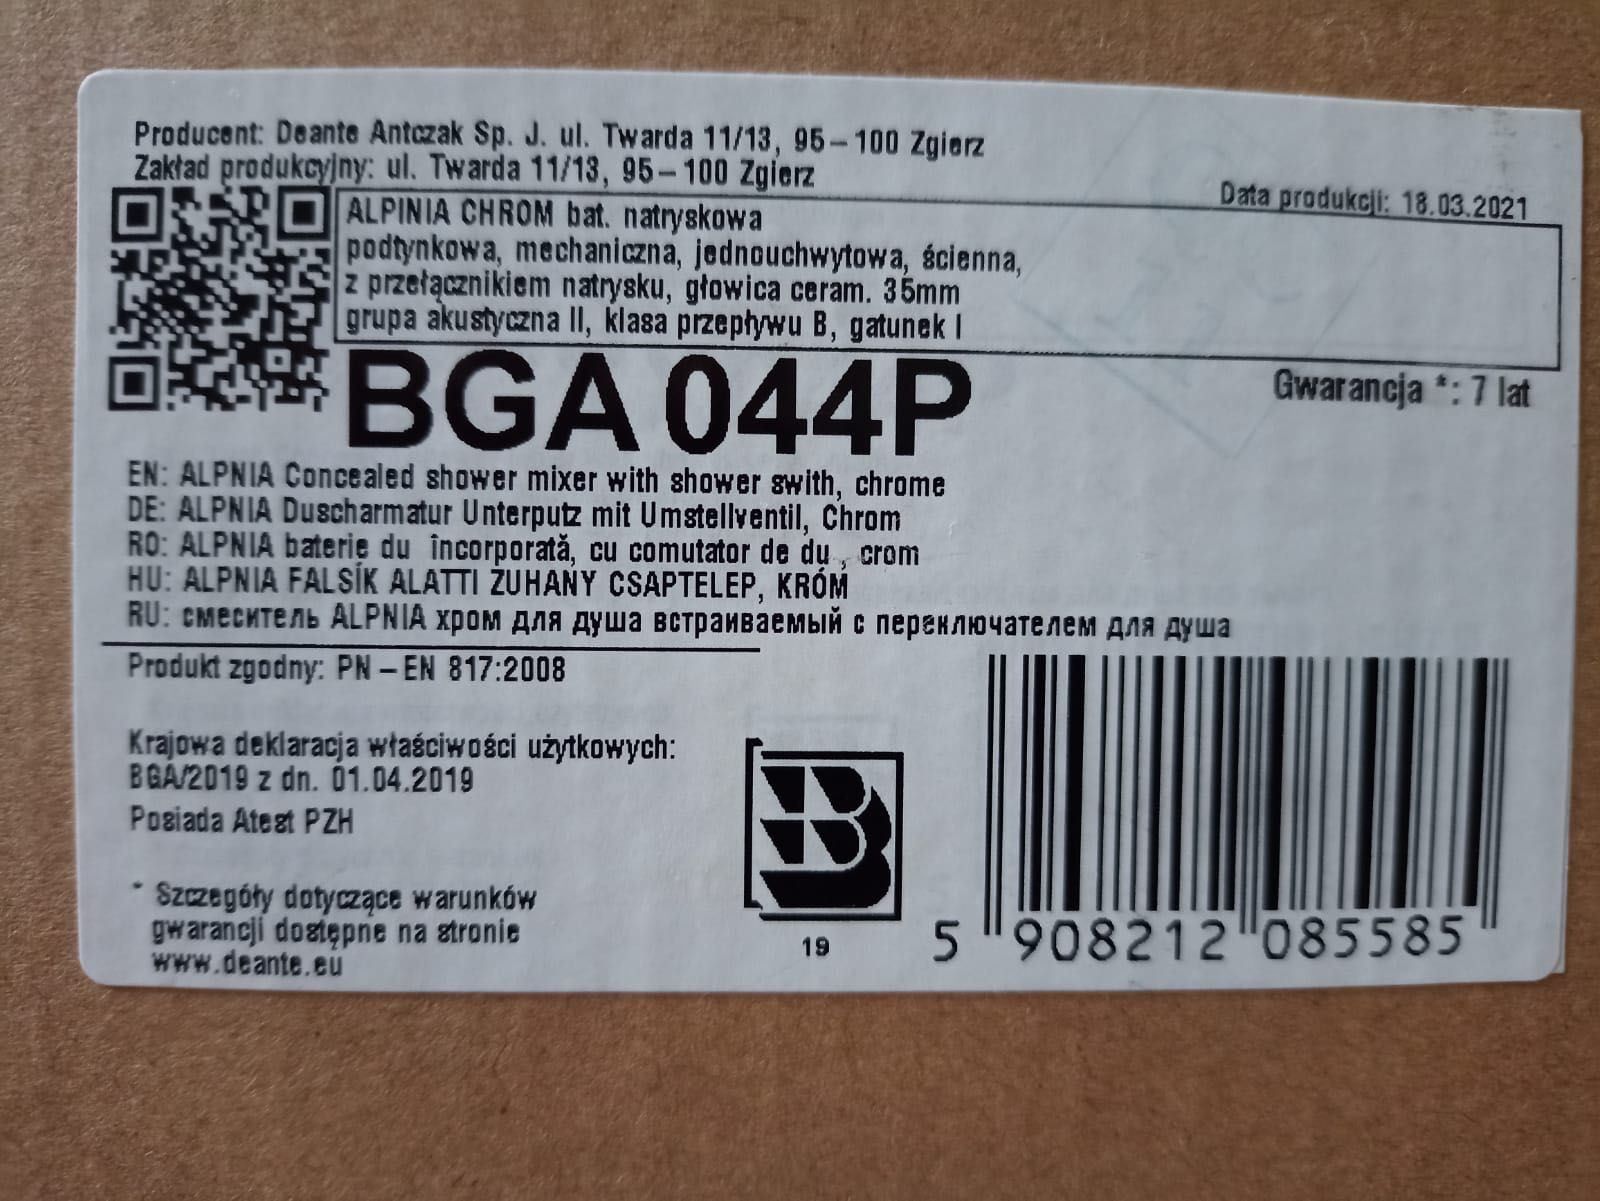 Bateria Deante Alpina Chrom
Model BGA 044P